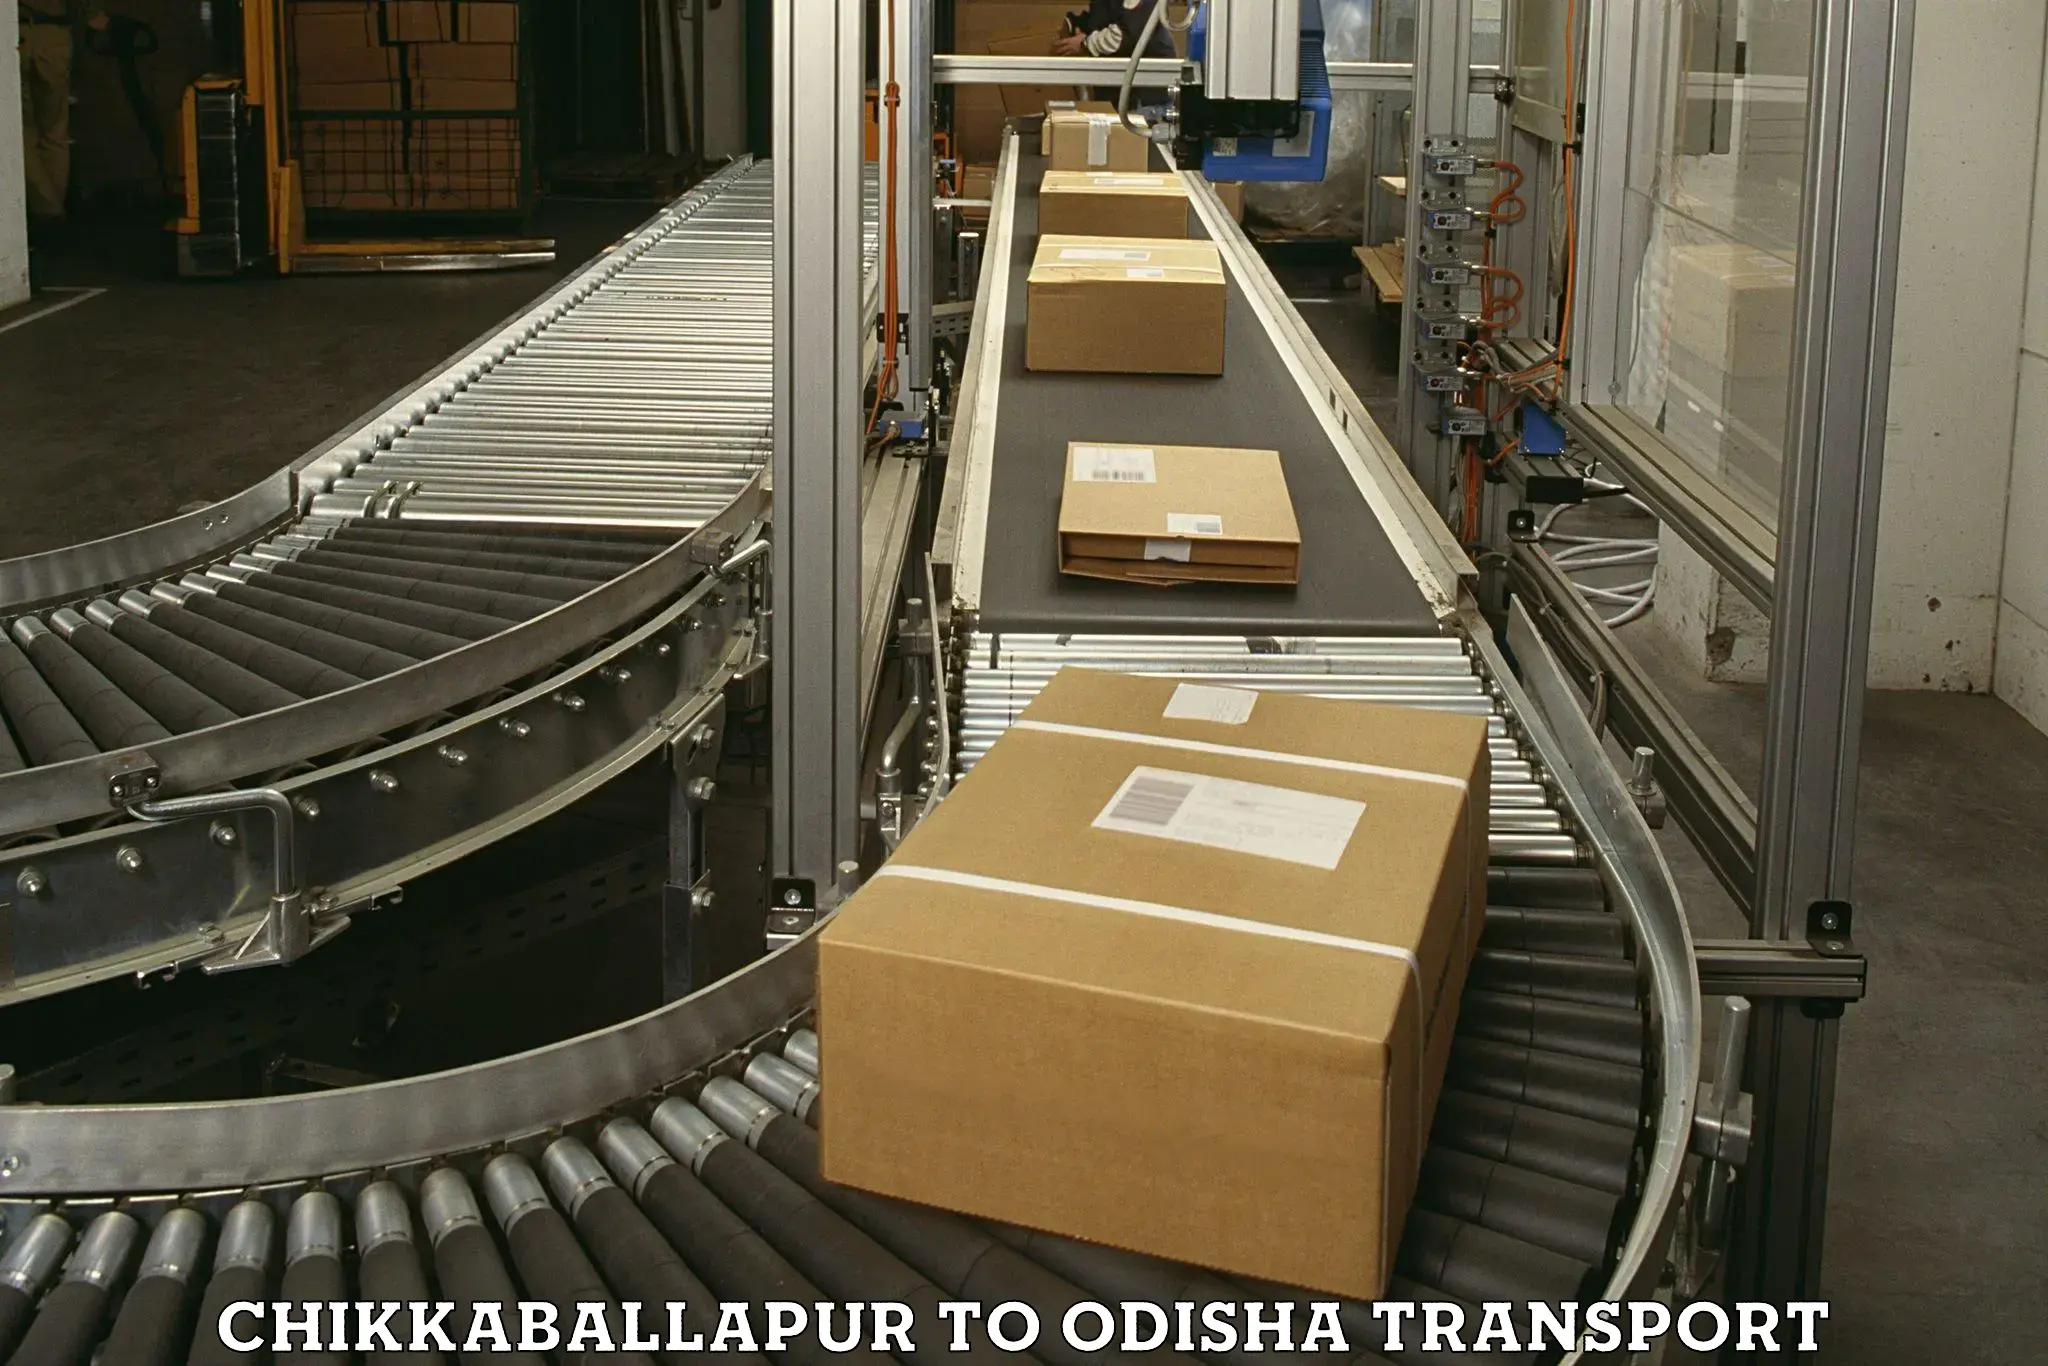 Online transport service Chikkaballapur to Cuttack